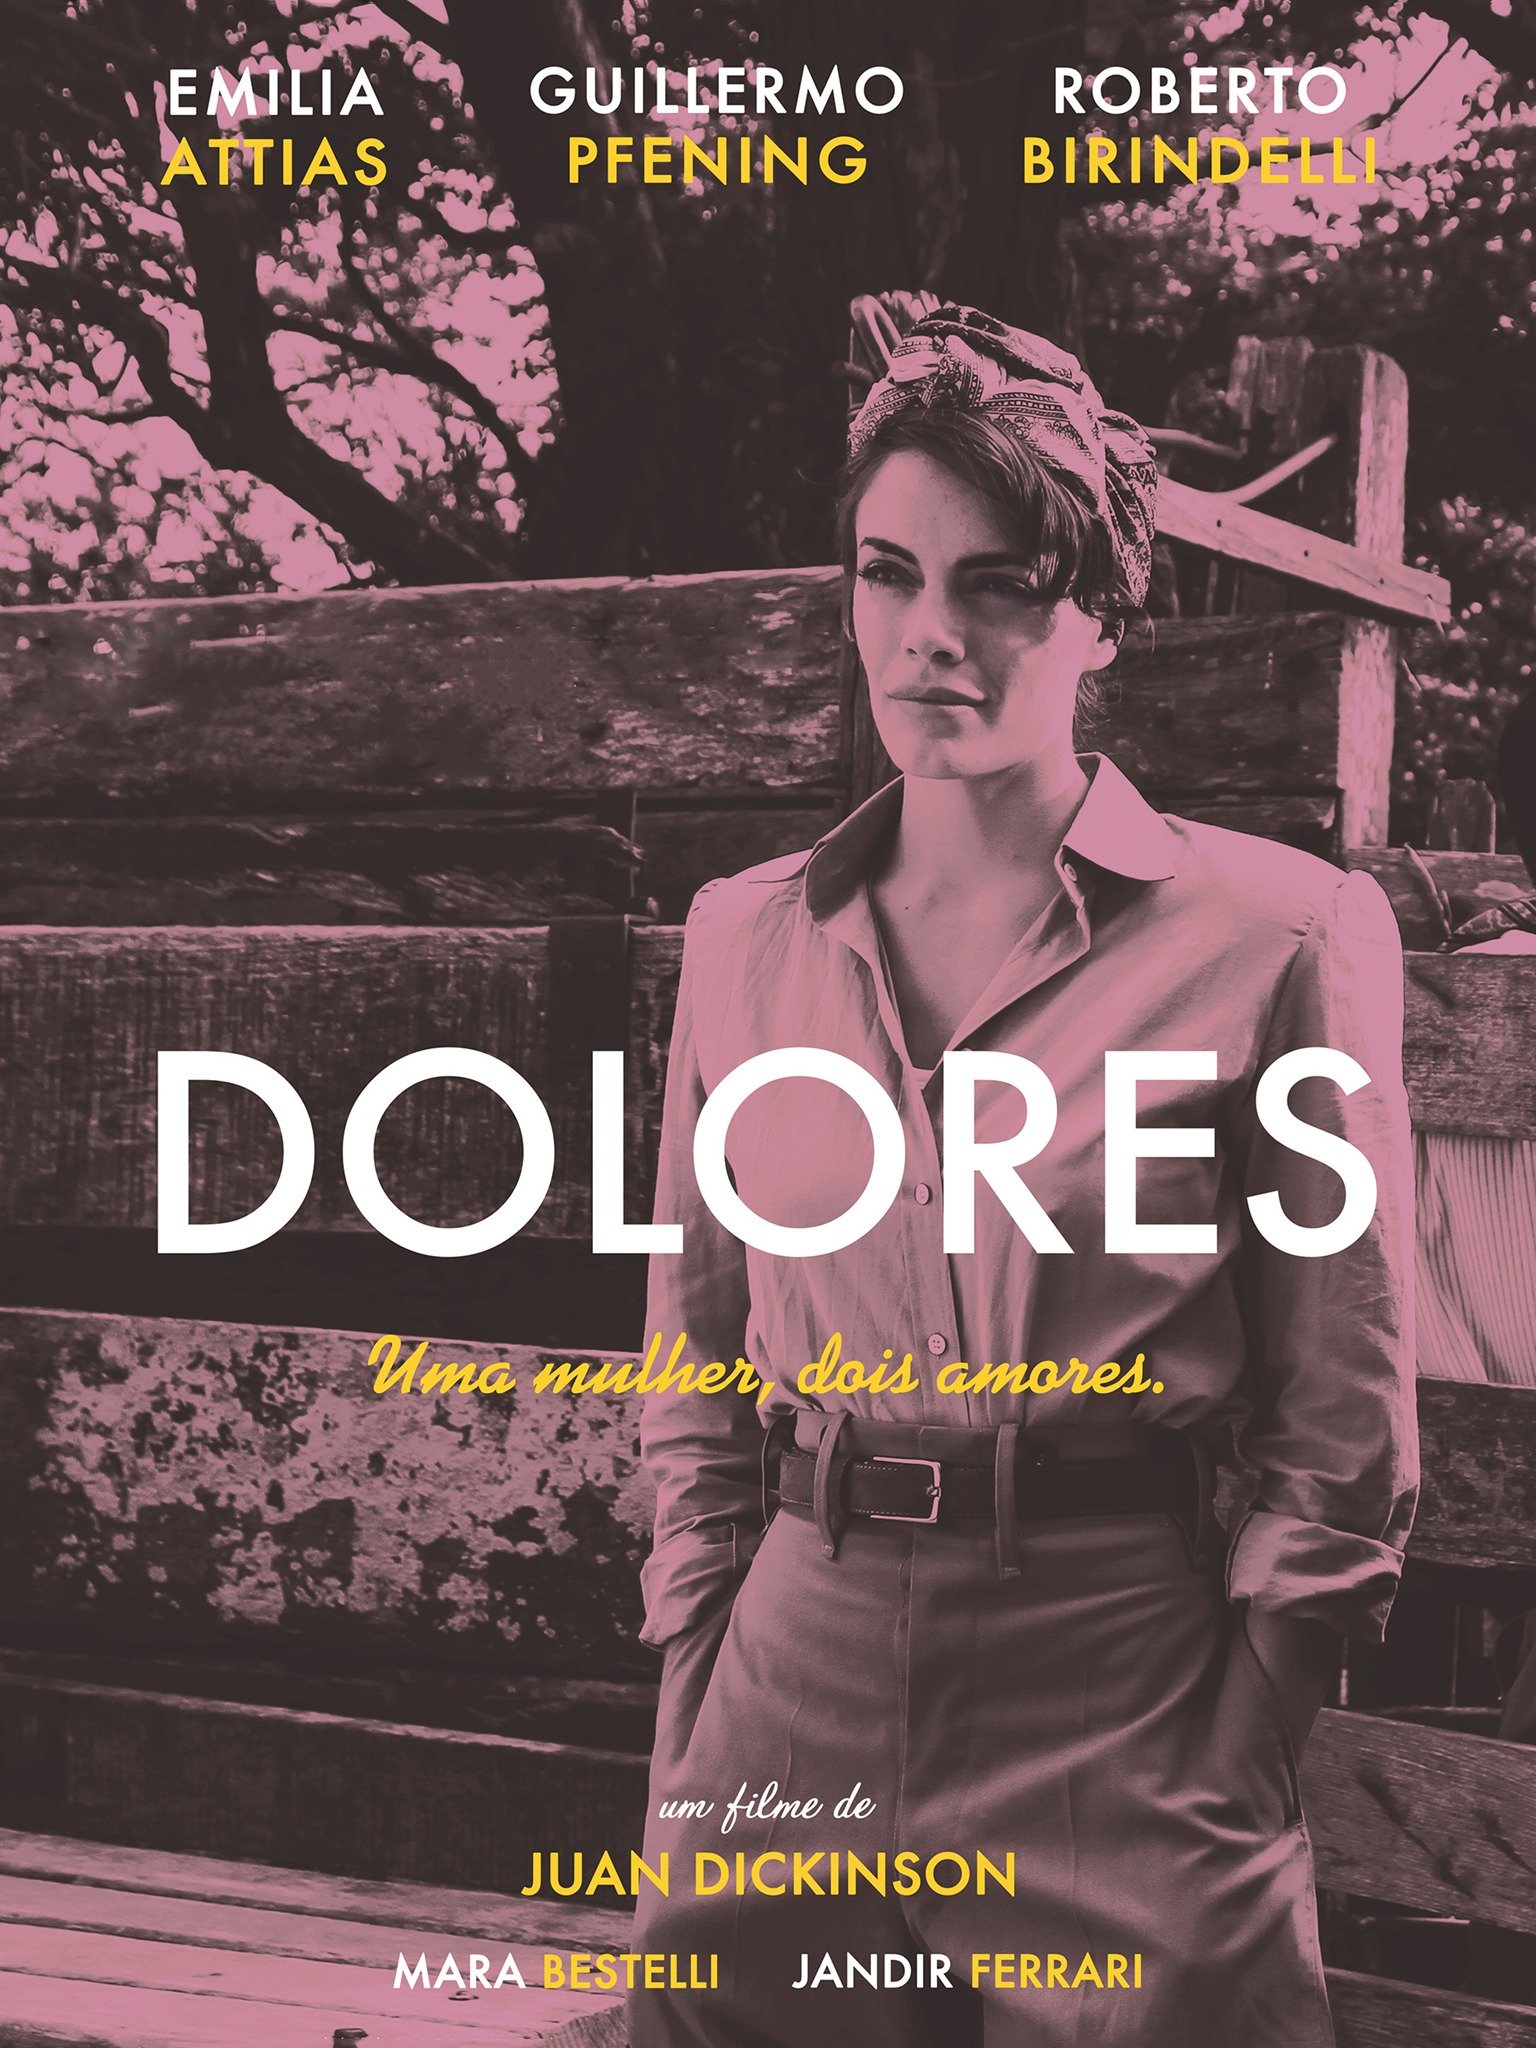 Dolores (2017)